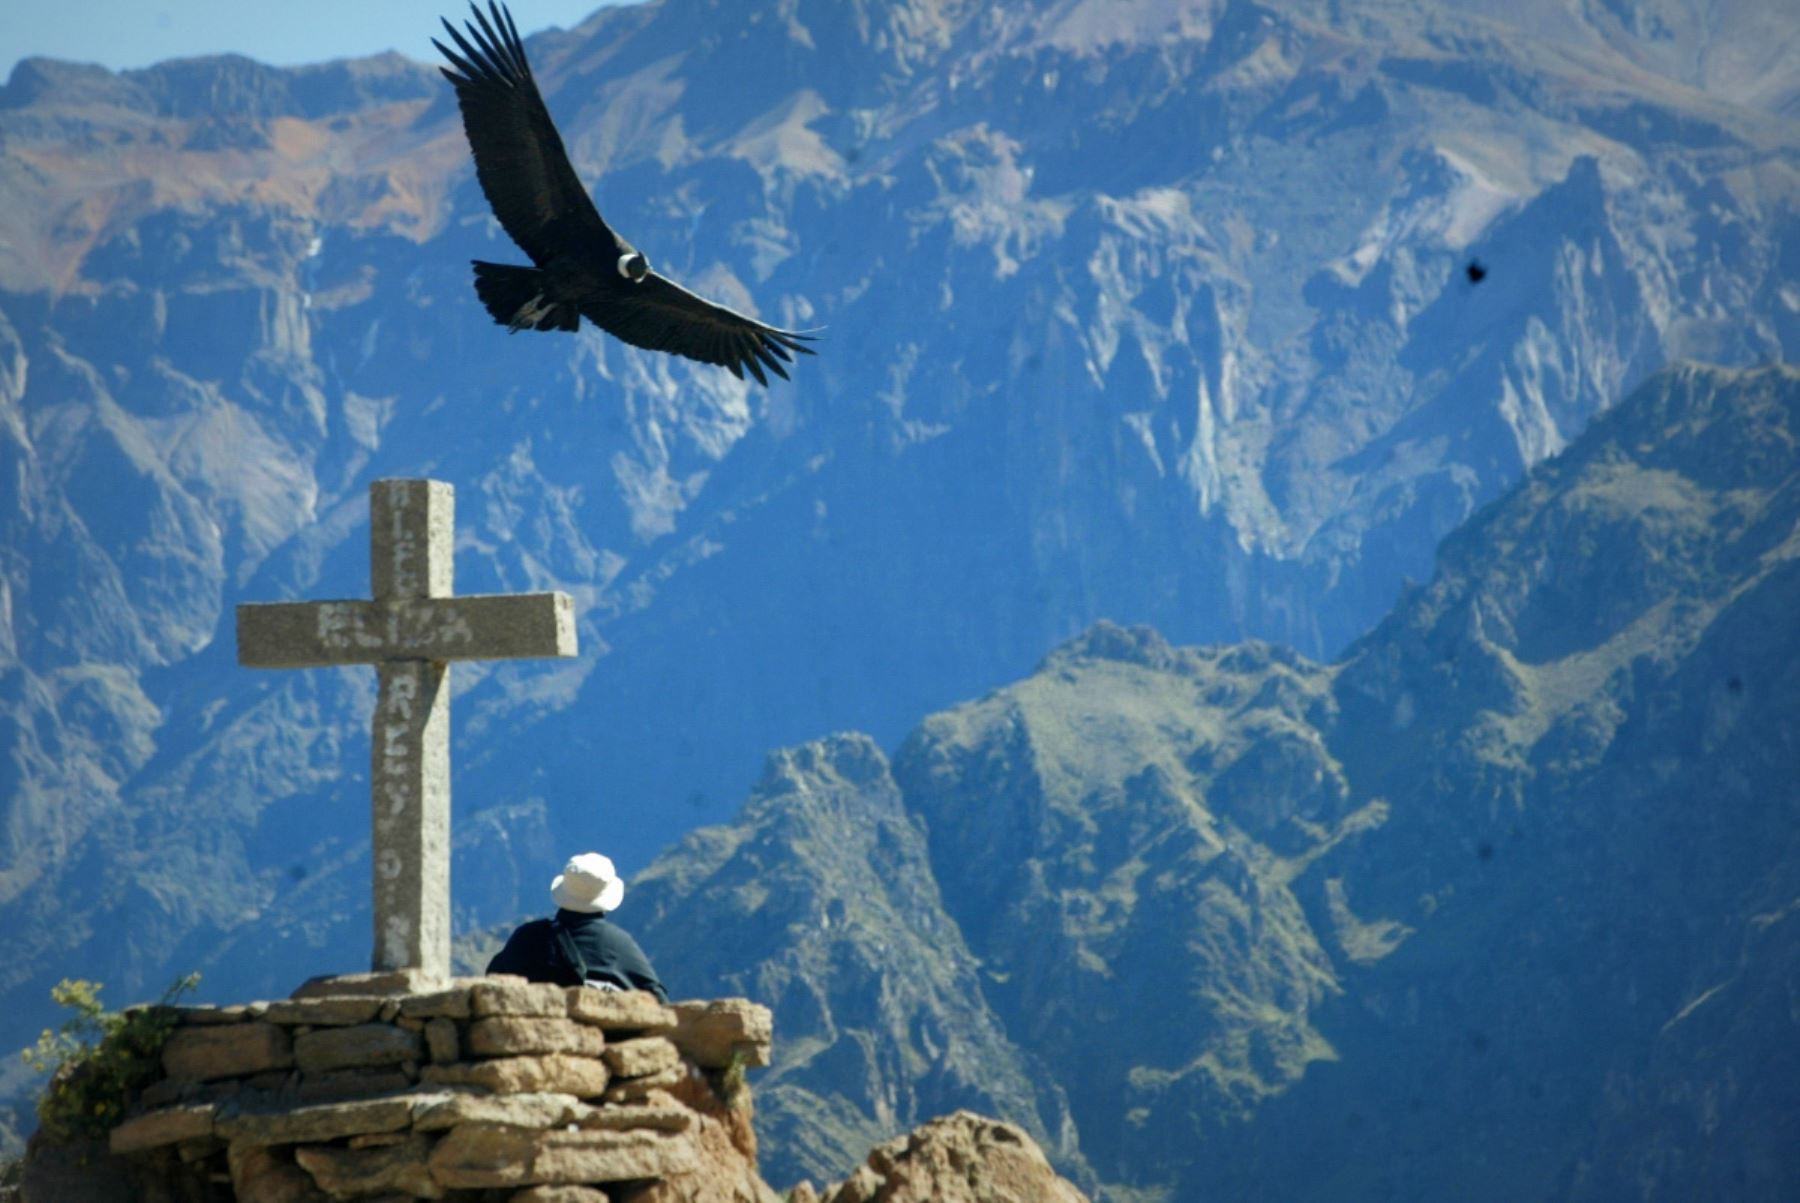 Desde el mirador de la Cruz del Cóndor, en el valle del Colca (Arequipa), se puede apreciar el majestuoso vuelo del cóndor. Foto: ANDINA/Difusión